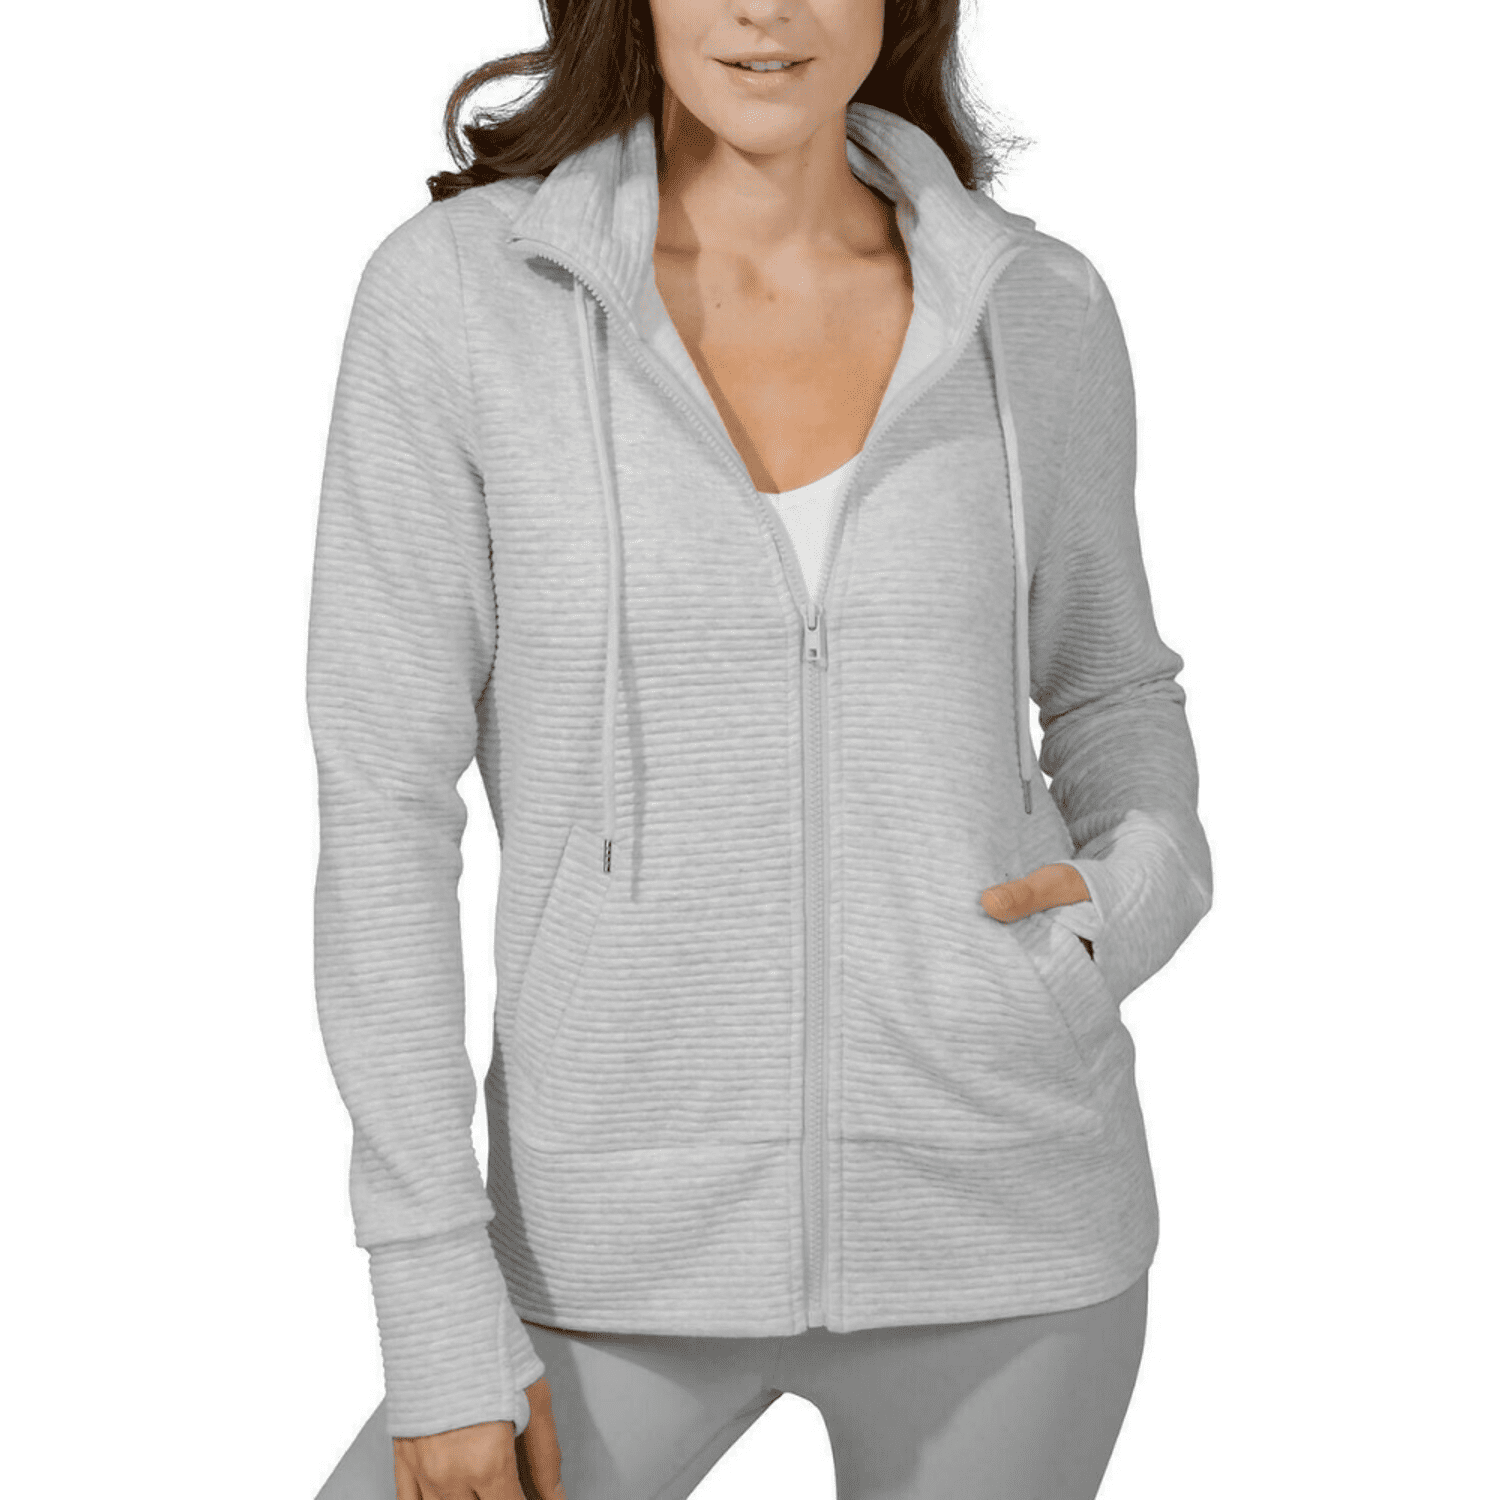 Danskin Now Women's Active Full Zip Fleece Hoodie XXXL Multi Color XS 